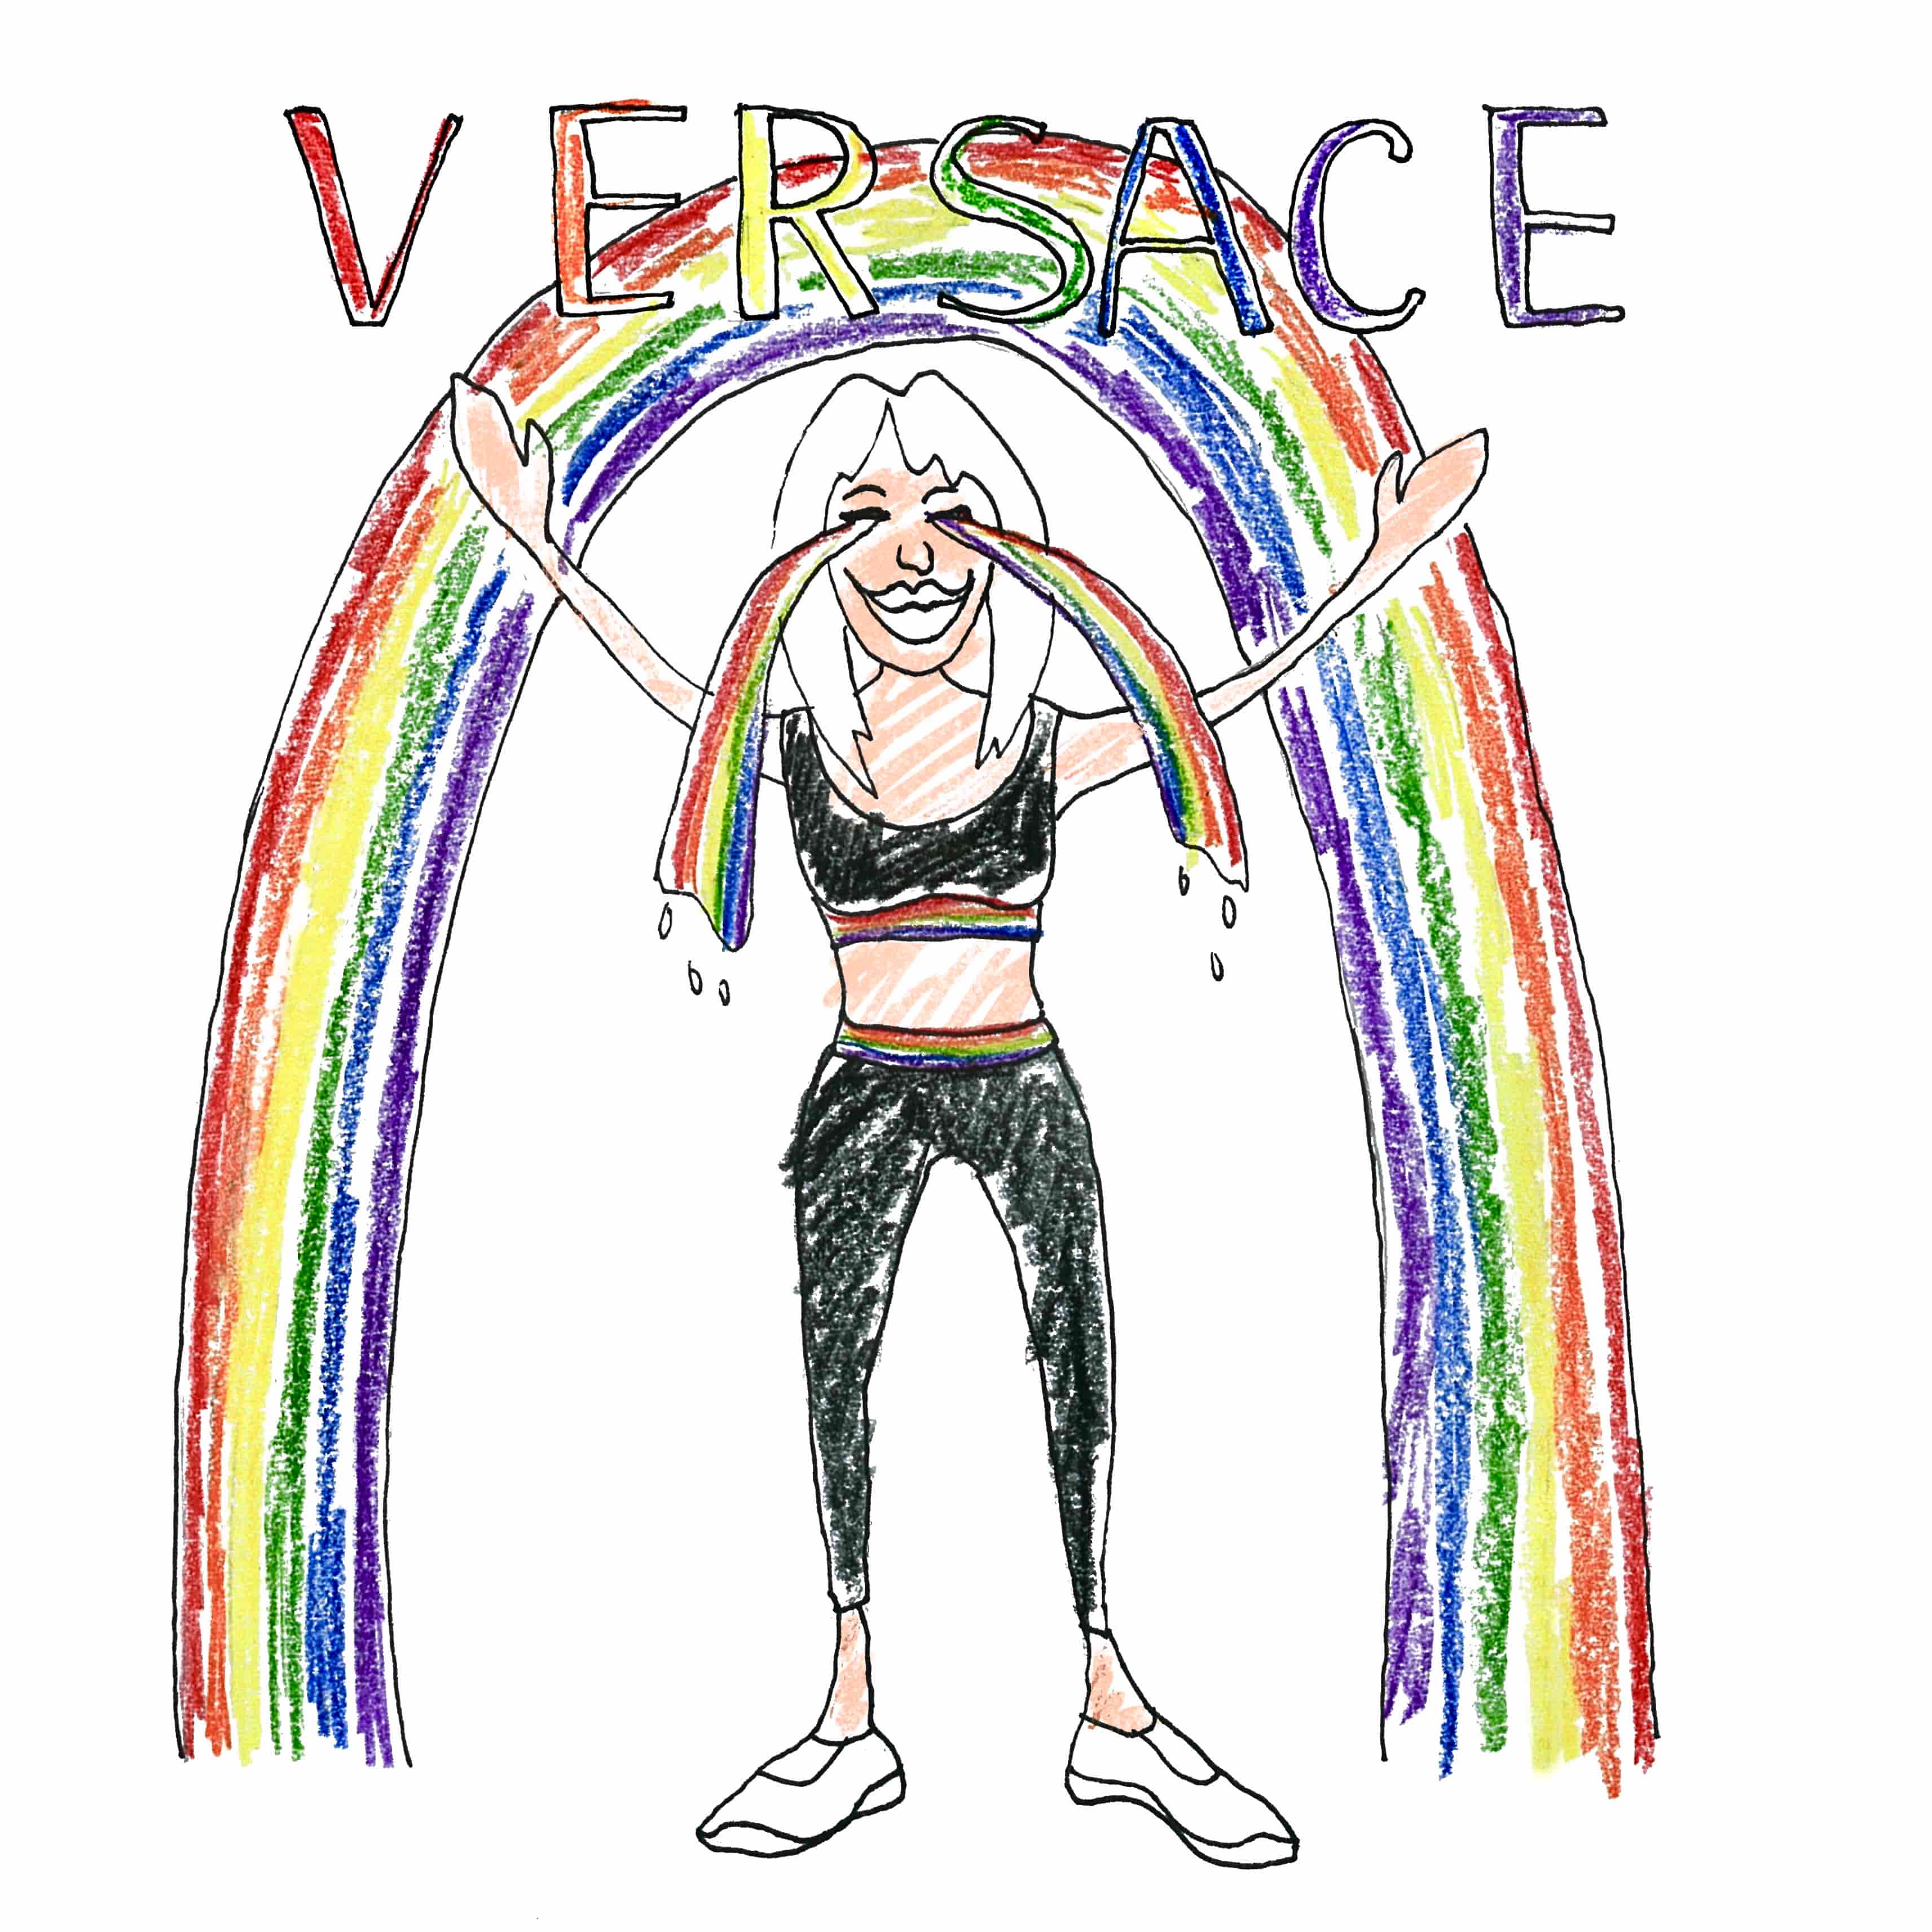 versace выпустил коллекцию в поддержку ЛГБТ